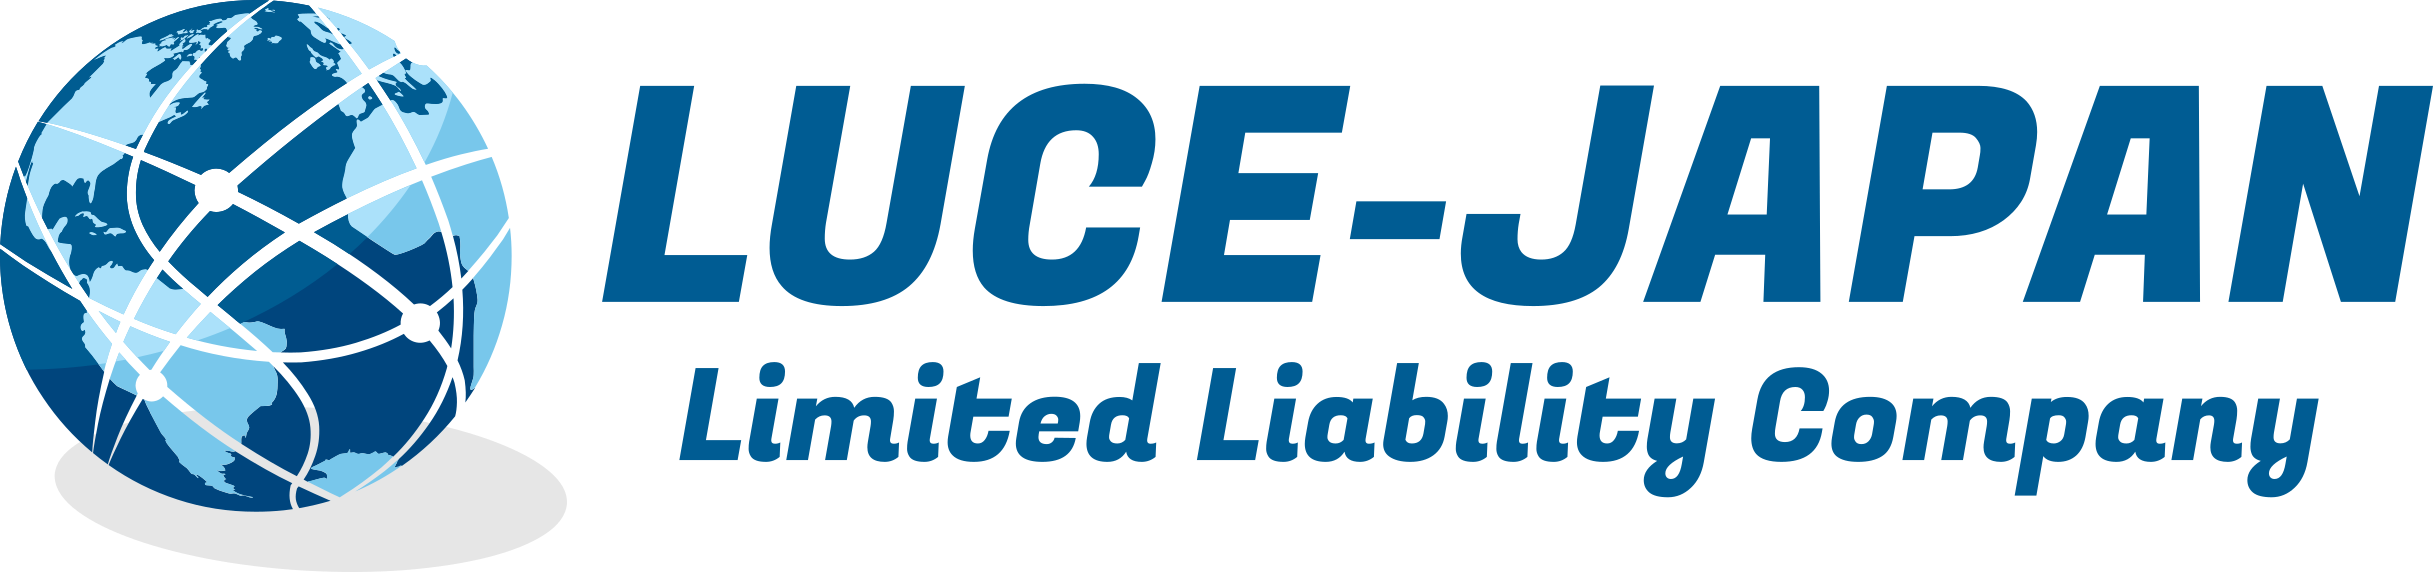 LUCE-JAPAN合同会社